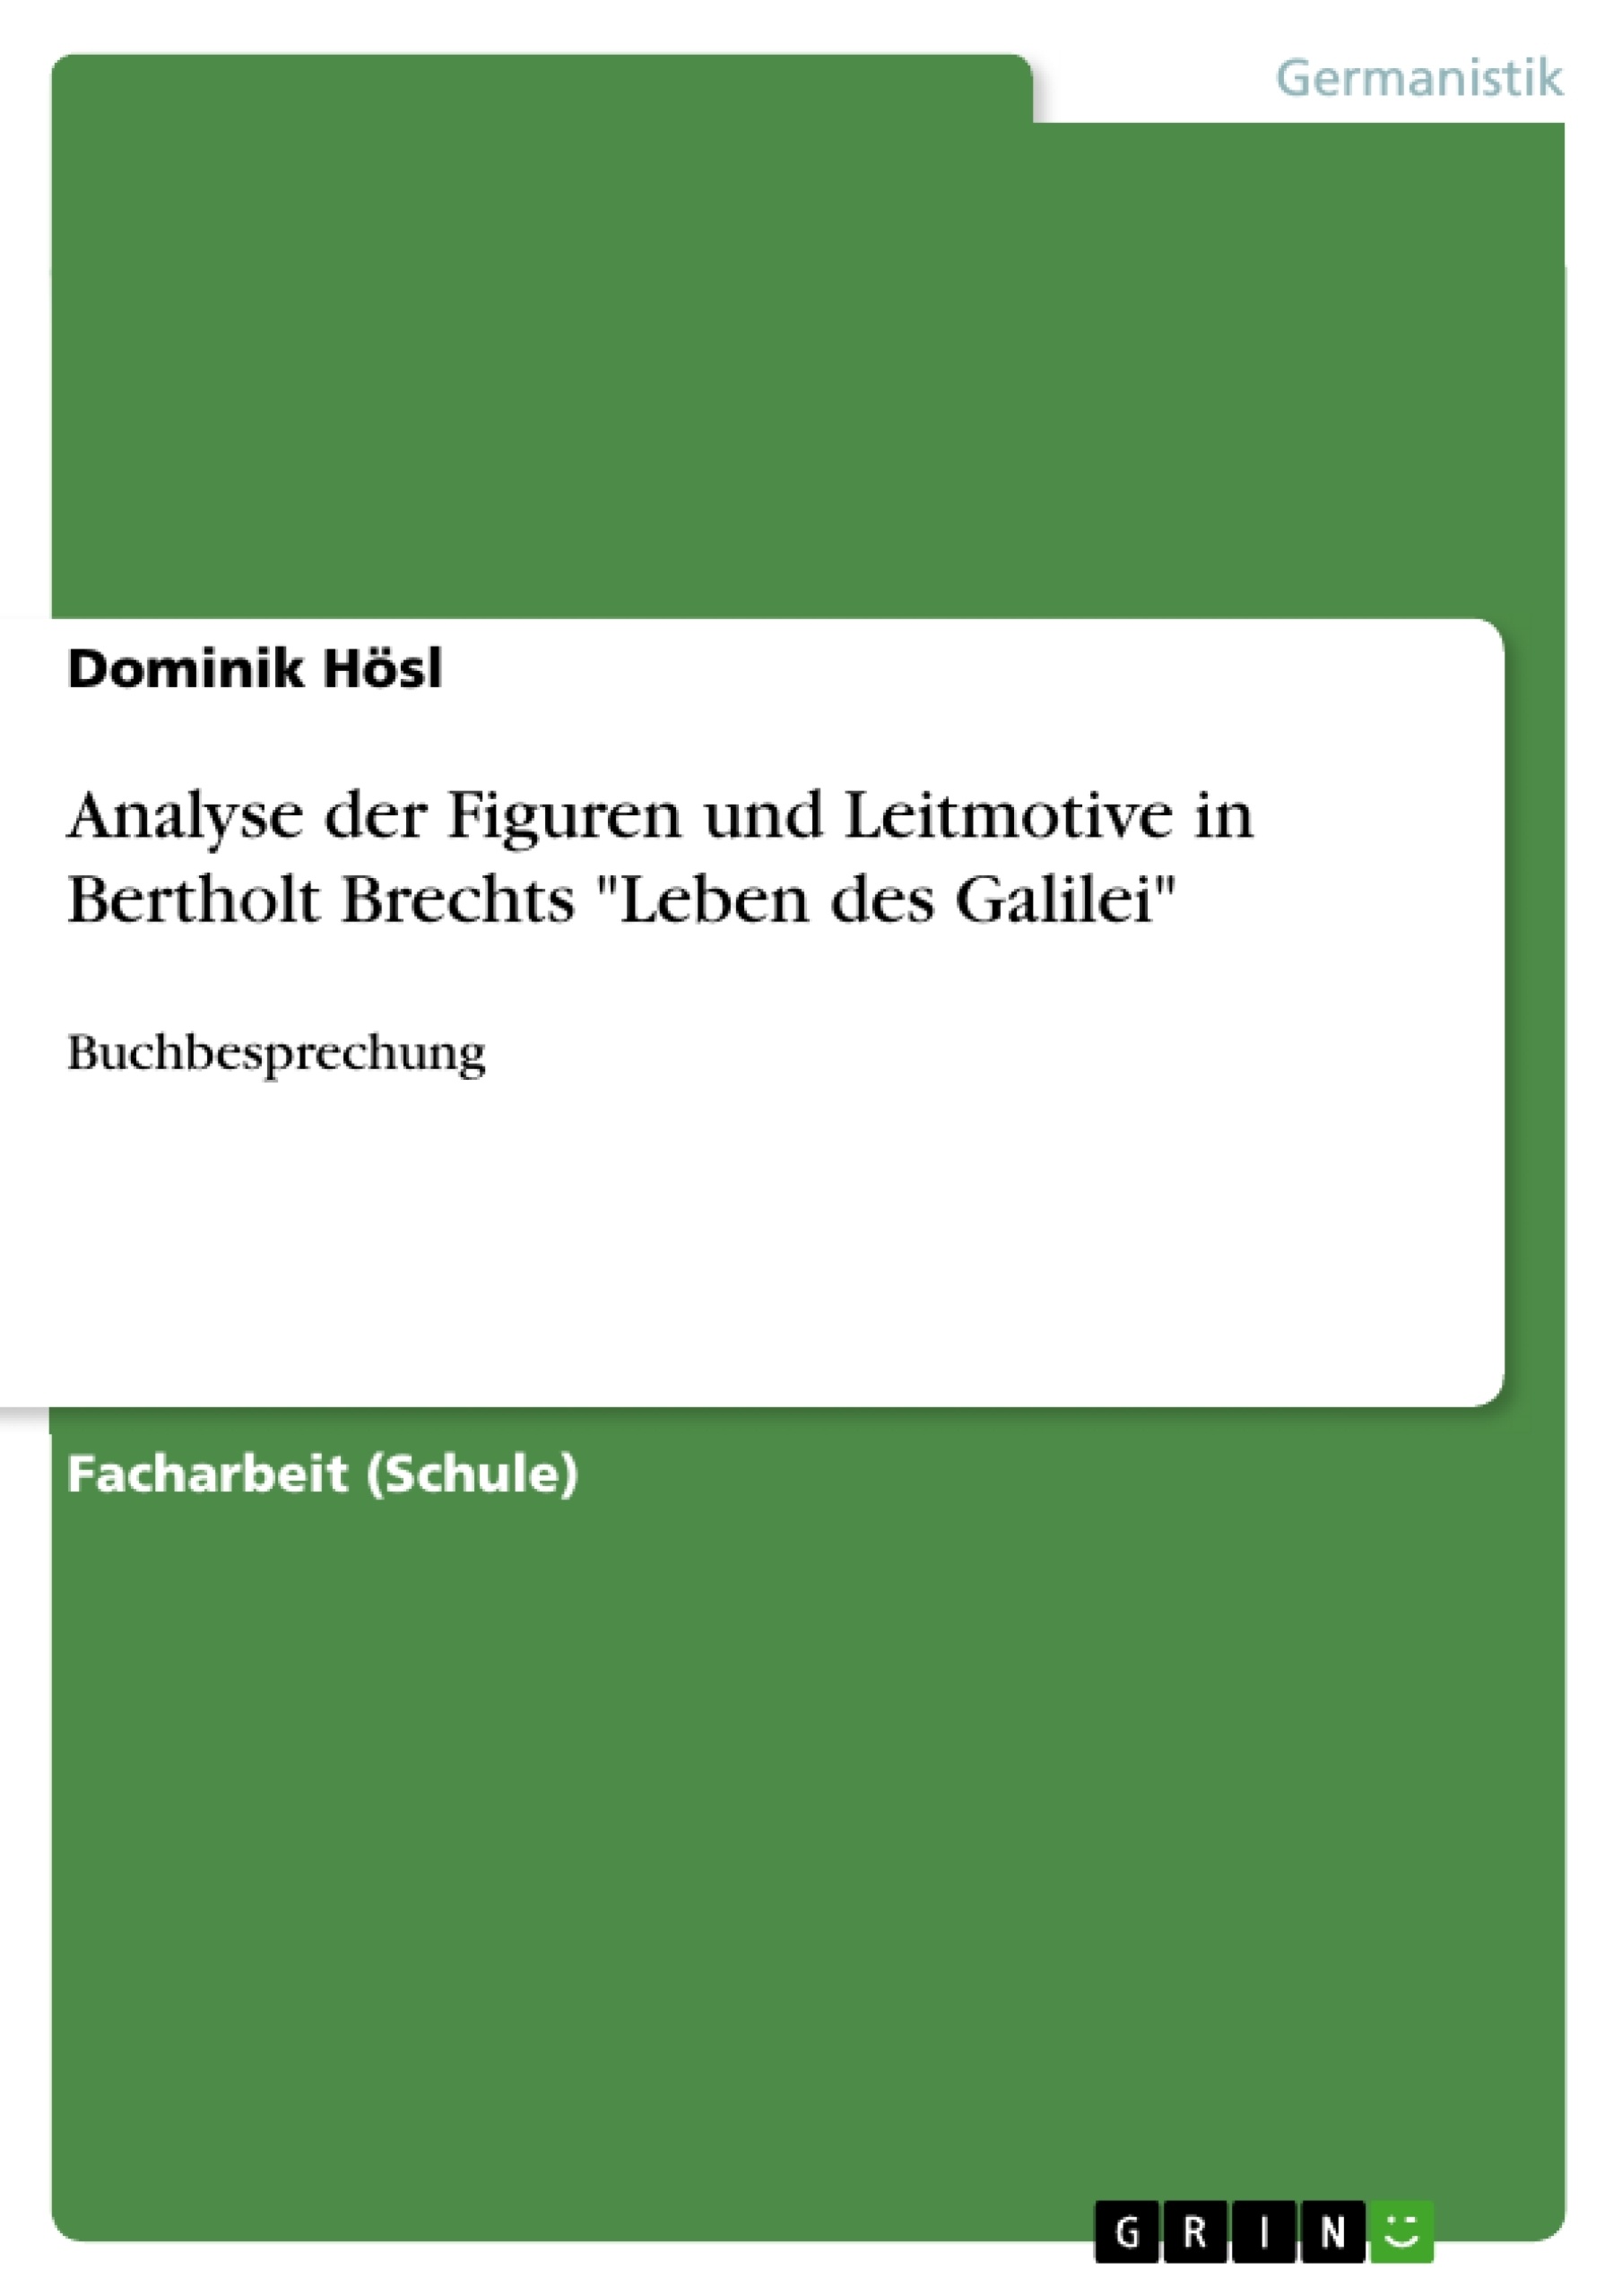 Título: Analyse der Figuren und Leitmotive in Bertholt Brechts "Leben des Galilei"